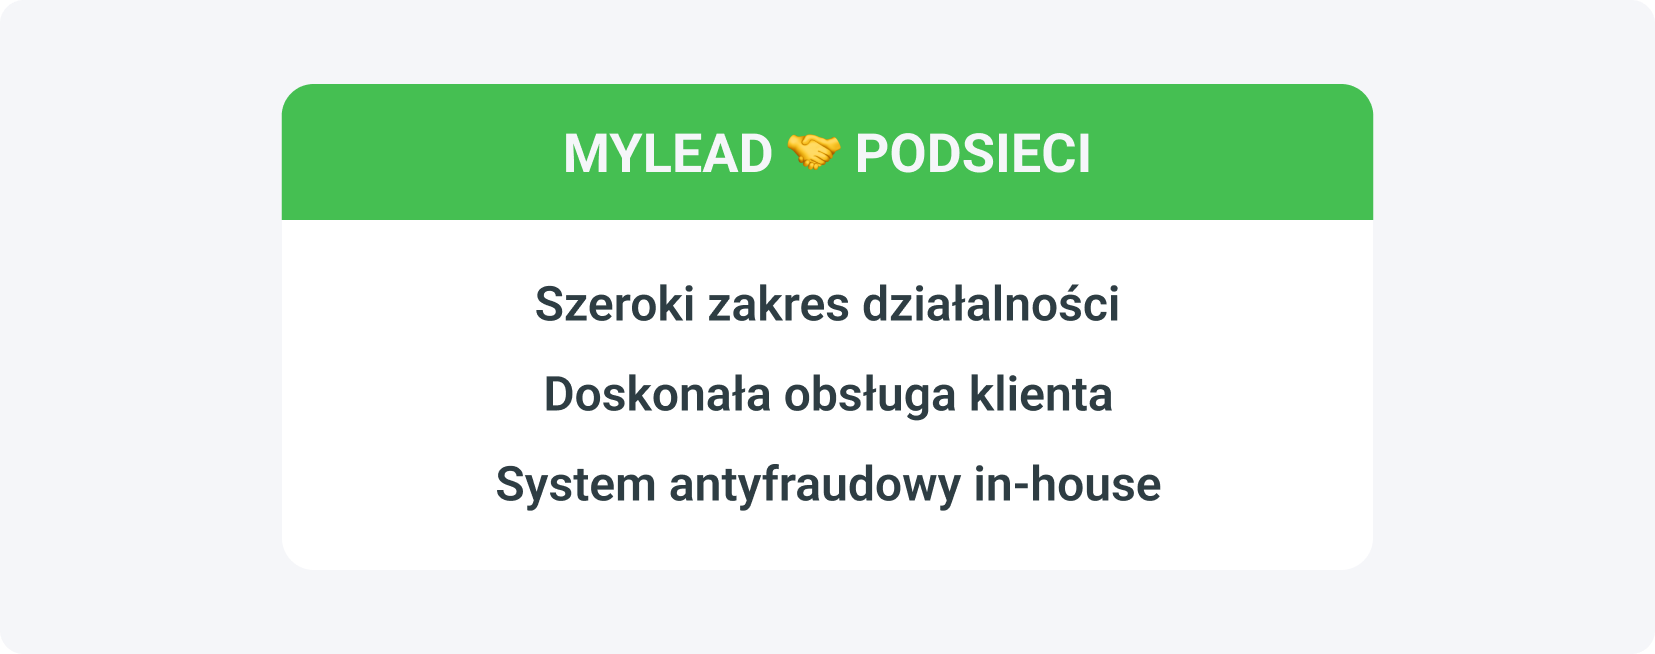 Zalety współpracy podsieci z siecią afiliacyjną taką jak MyLead to przede wszystkim szeroki zakres działalności, doskonała obsługa klienta, czy wewnętrzny system antyfraudowy.